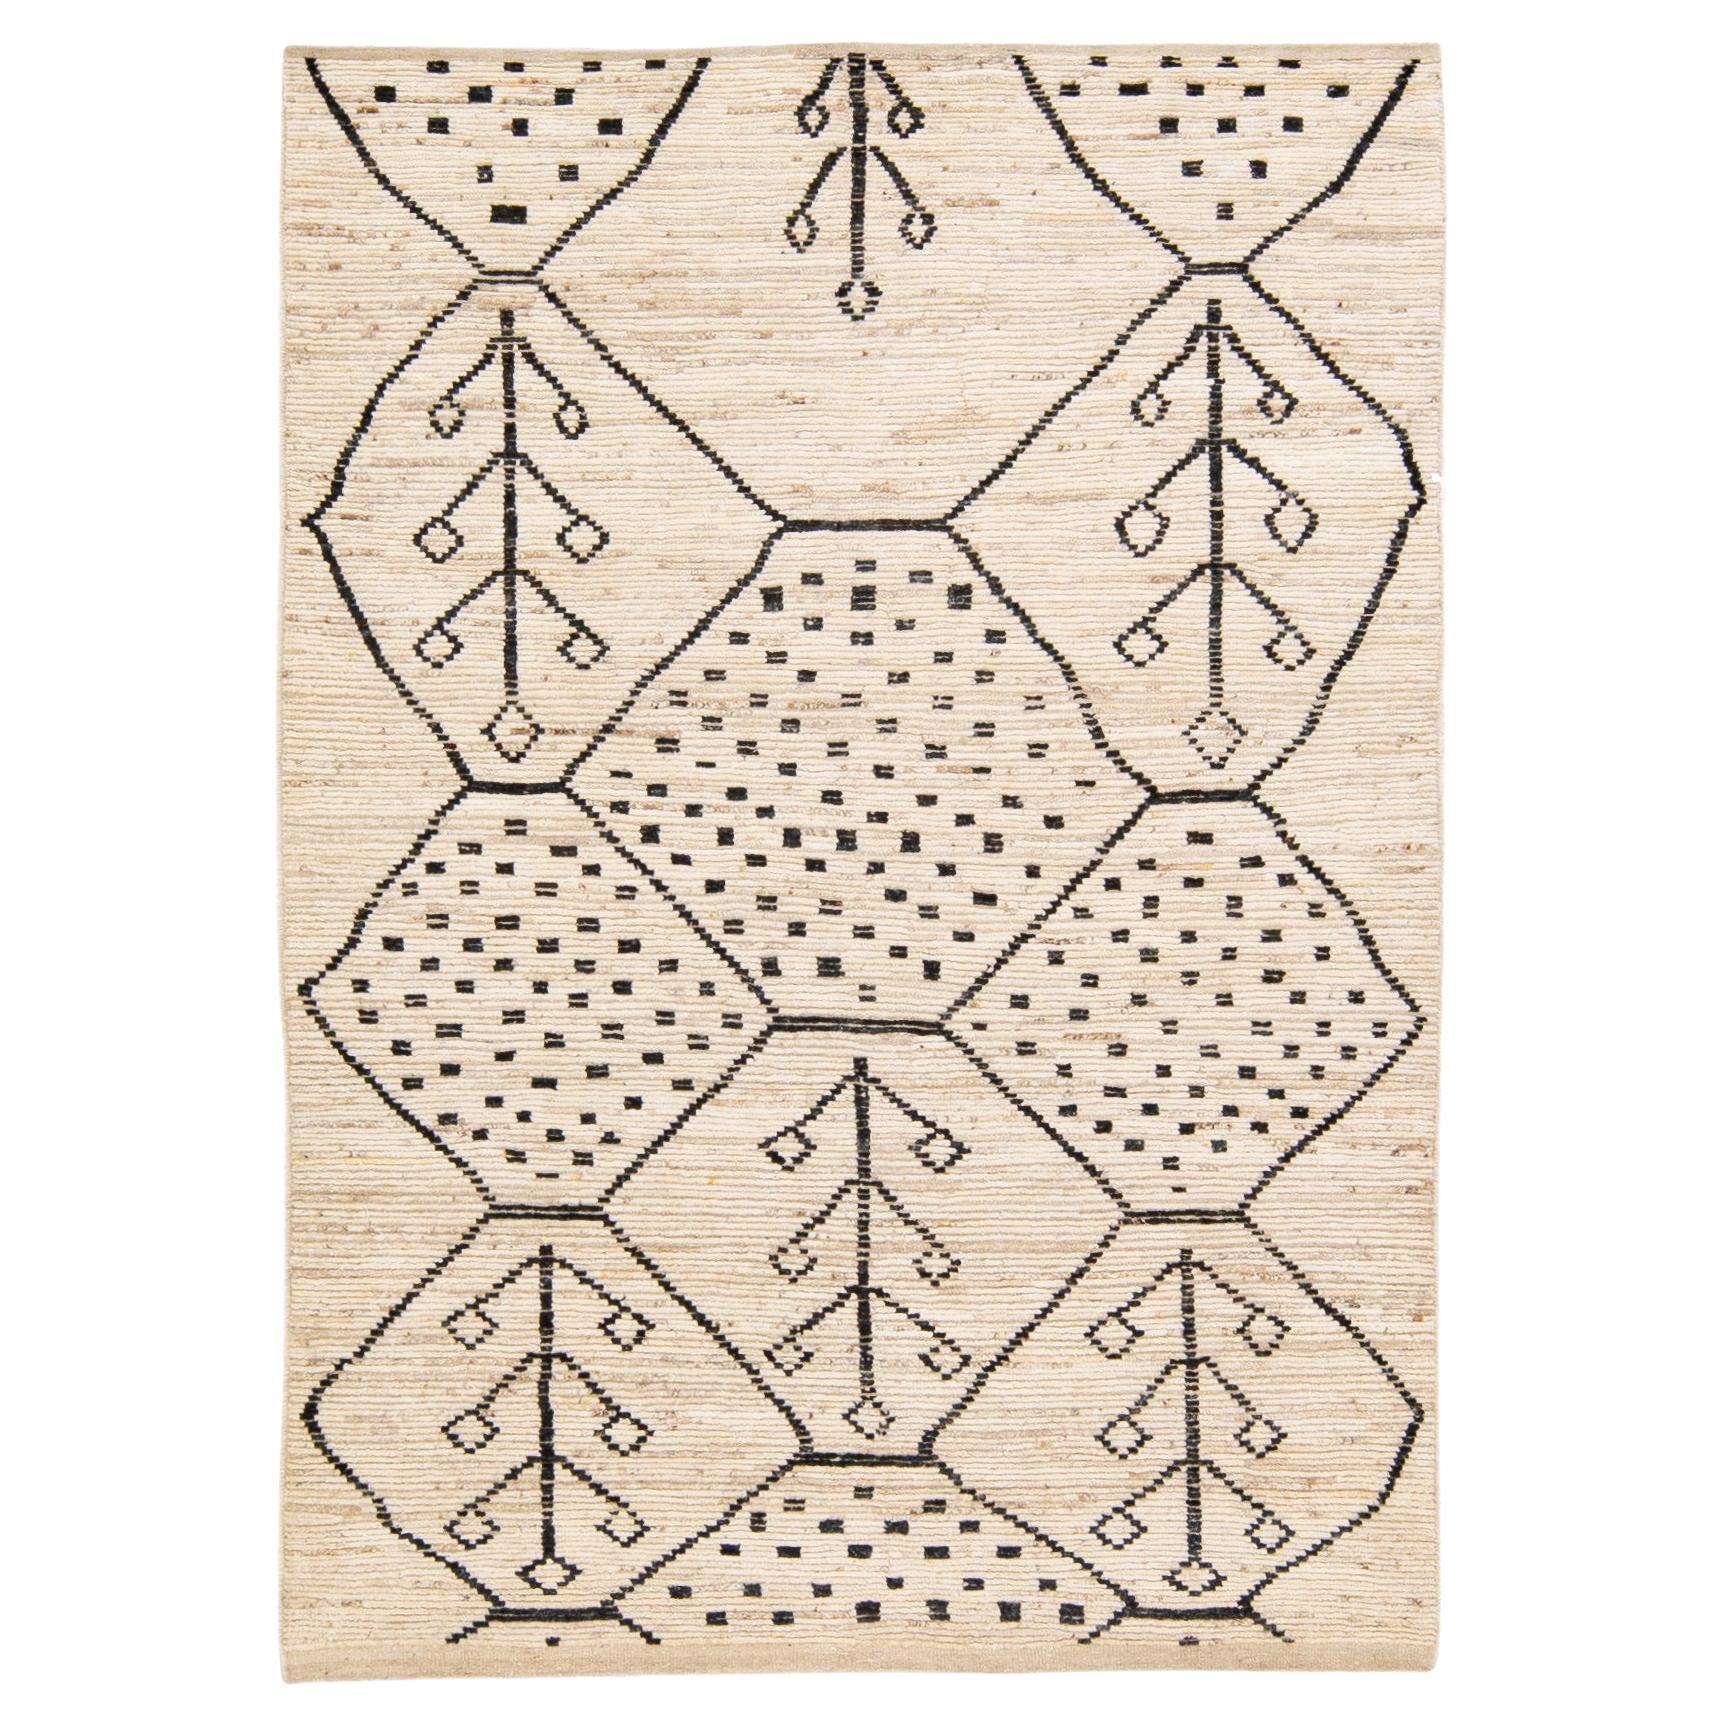 Tapis moderne de style marocain en laine beige de style Boho à motifs géométriques faits à la main